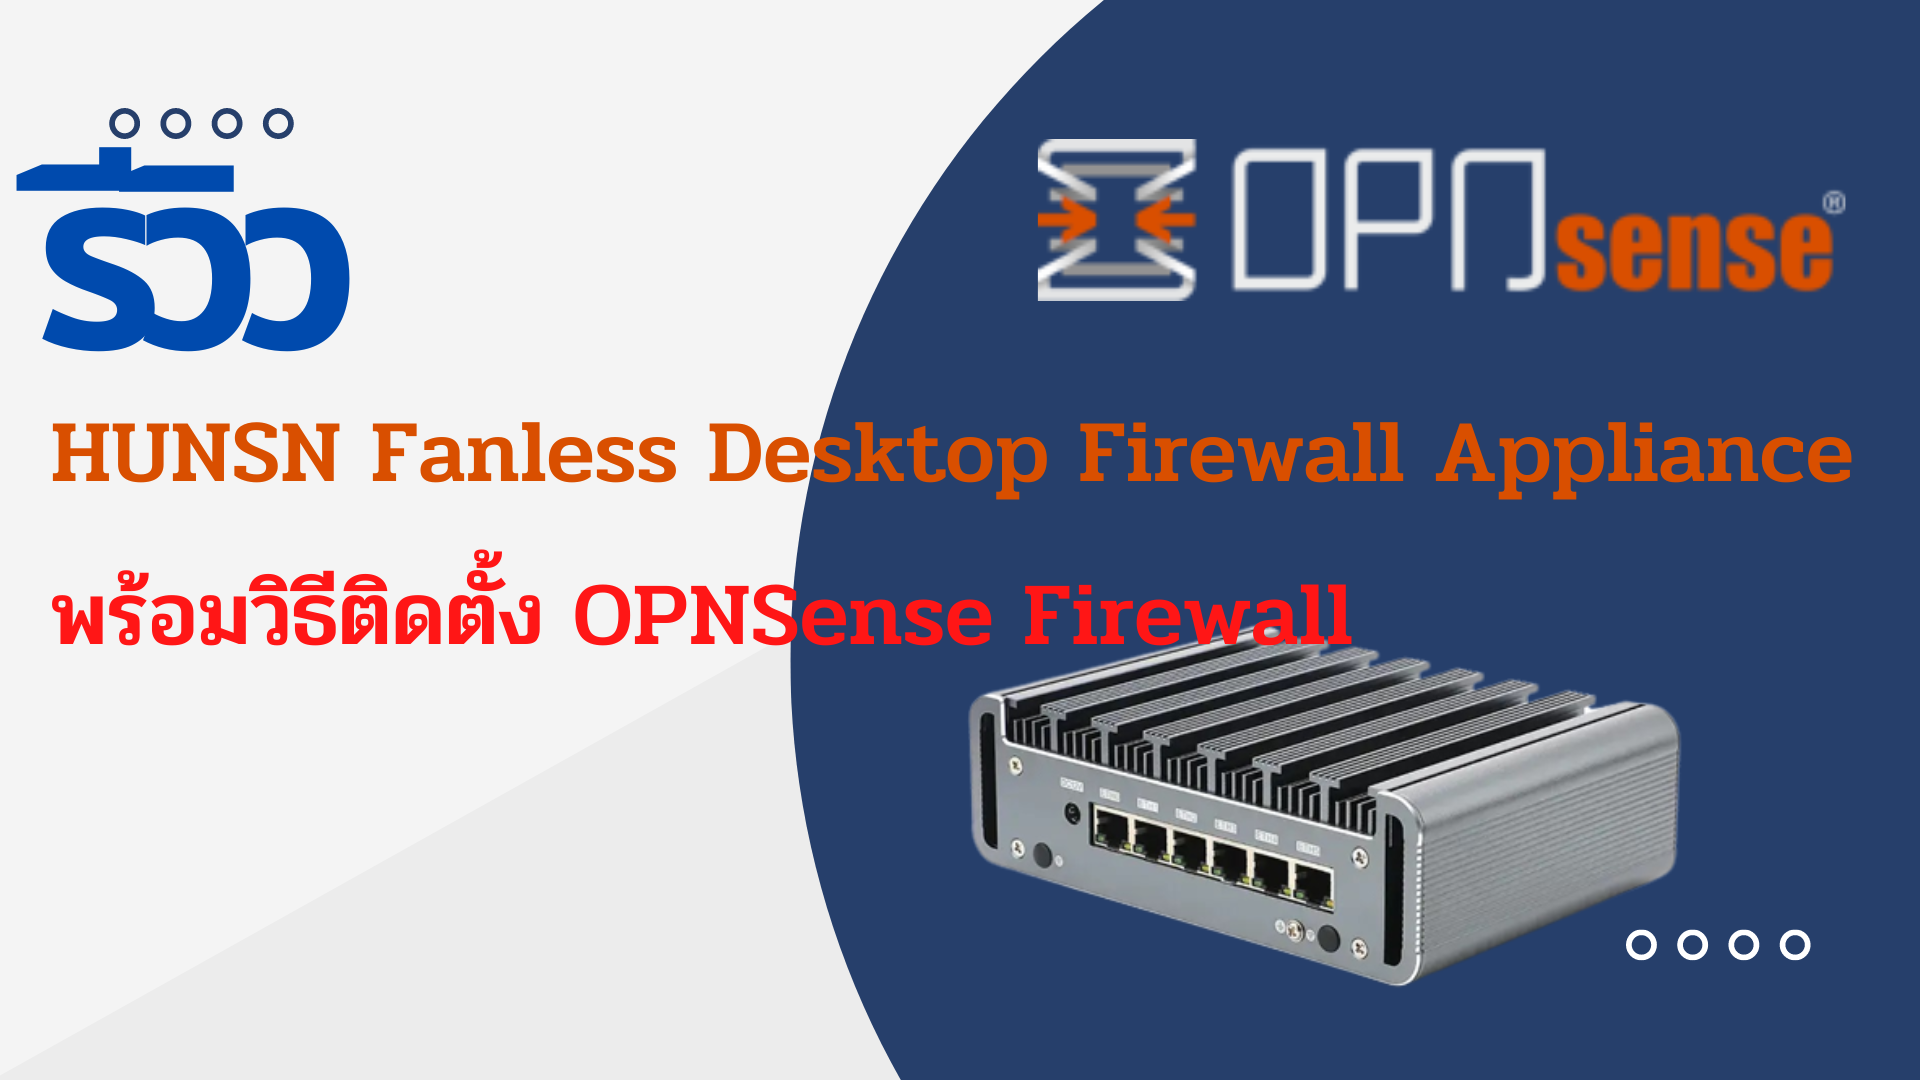 รีวิว HUNSN Fanless Desktop Firewall Appliance  มินิพีซีอุปกรณ์ไฟร์วอลล์ คุณภาพสูง ราคาถูก ฟีเจอร์ครบ  พร้อมวิธีติดตั้ง OPNSense  Firewall